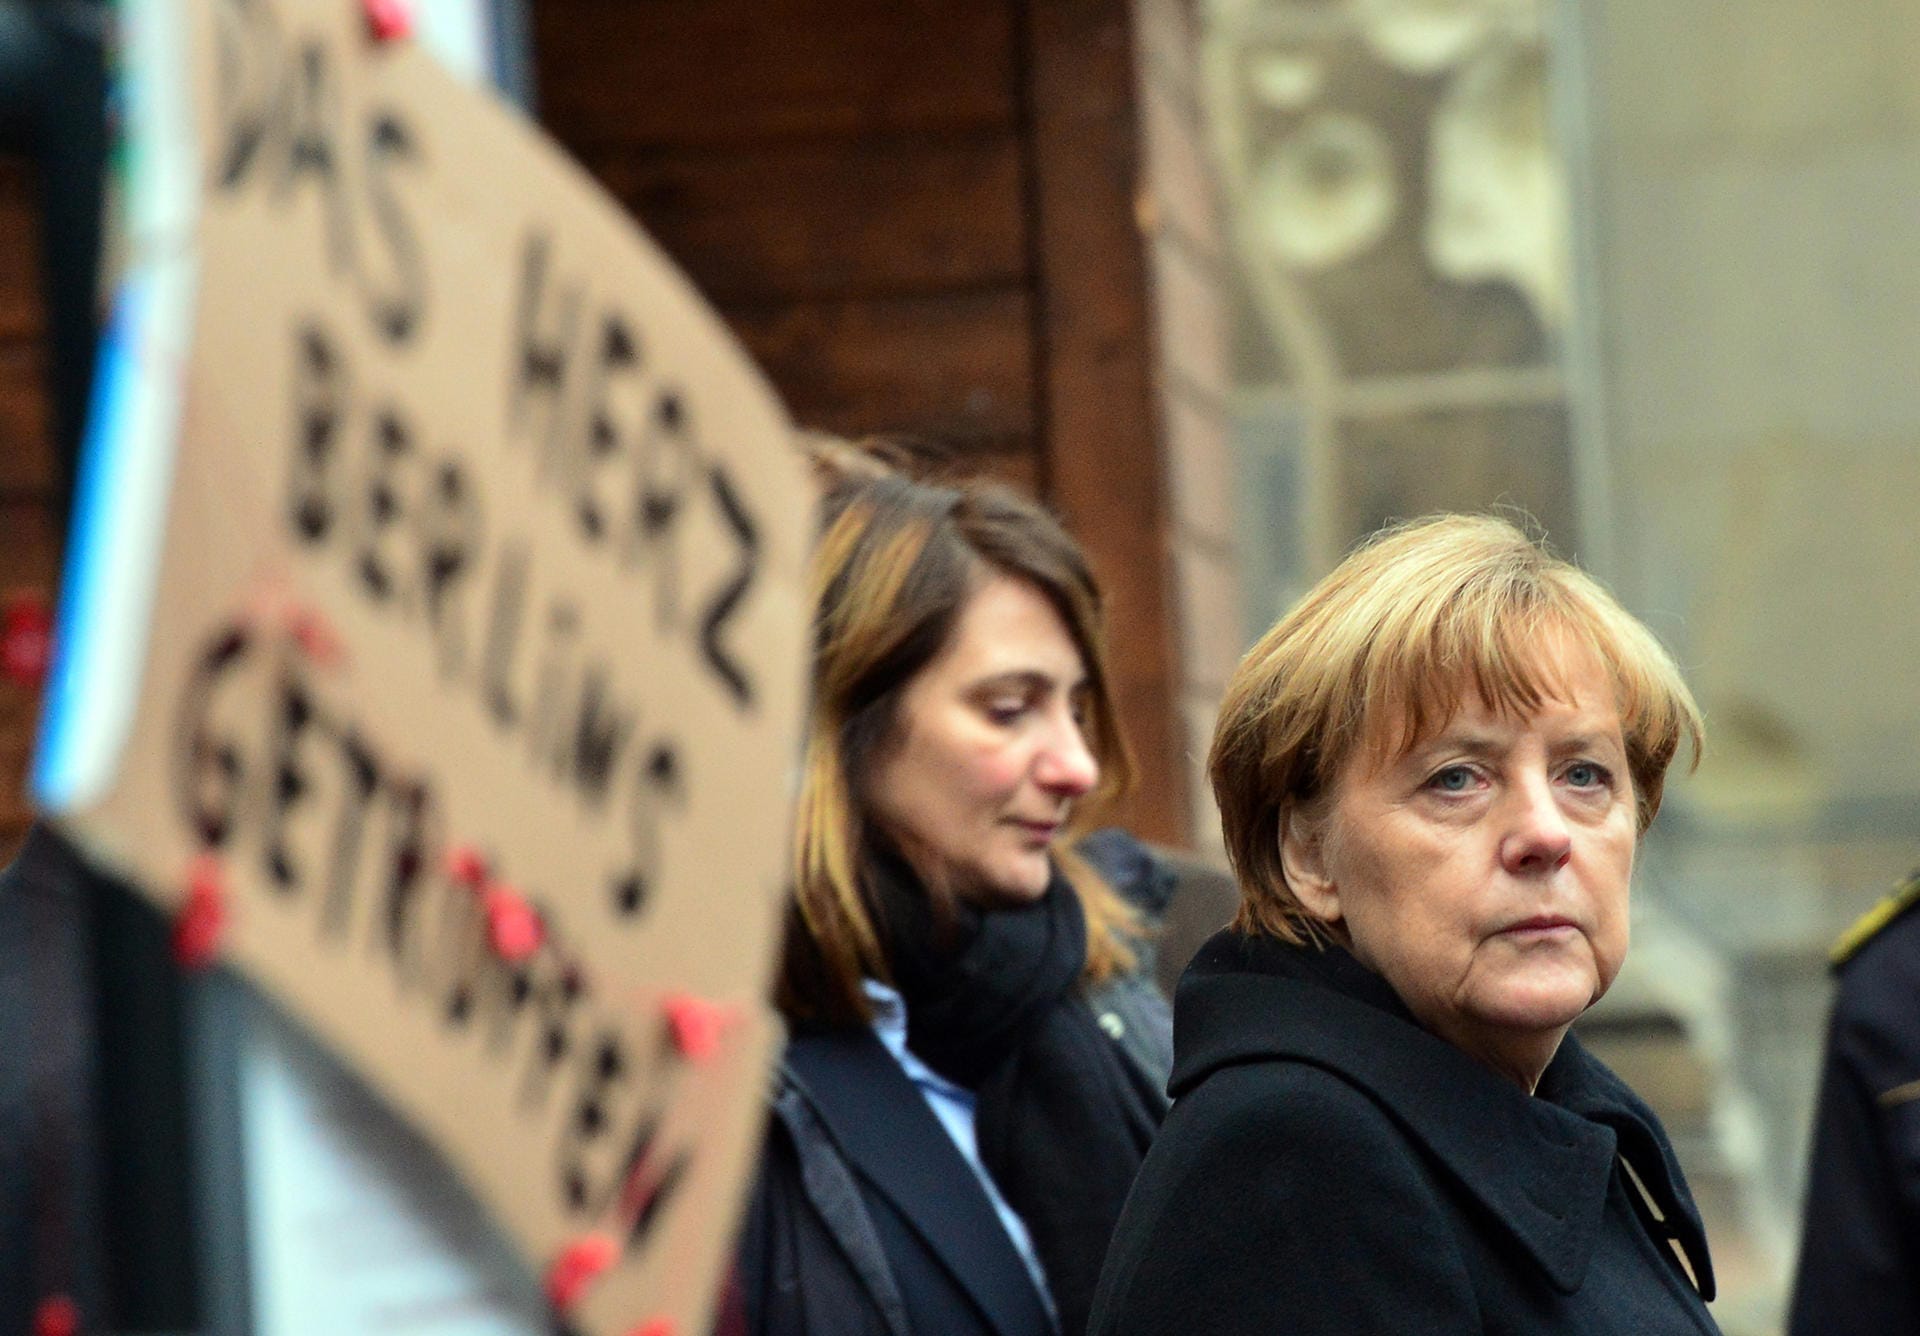 19. Dezember 2016: Bei einem islamistischen Terroranschlag auf den Weihnachtsmarkt an der Berliner Gedächtniskirche sterben zwölf Menschen. "Wir wollen nicht damit leben, dass uns die Angst vor dem Bösen lähmt. Auch wenn es in diesen Stunden schwer fällt", sagt Merkel. Am Tatort legt sie eine weiße Rose nieder.